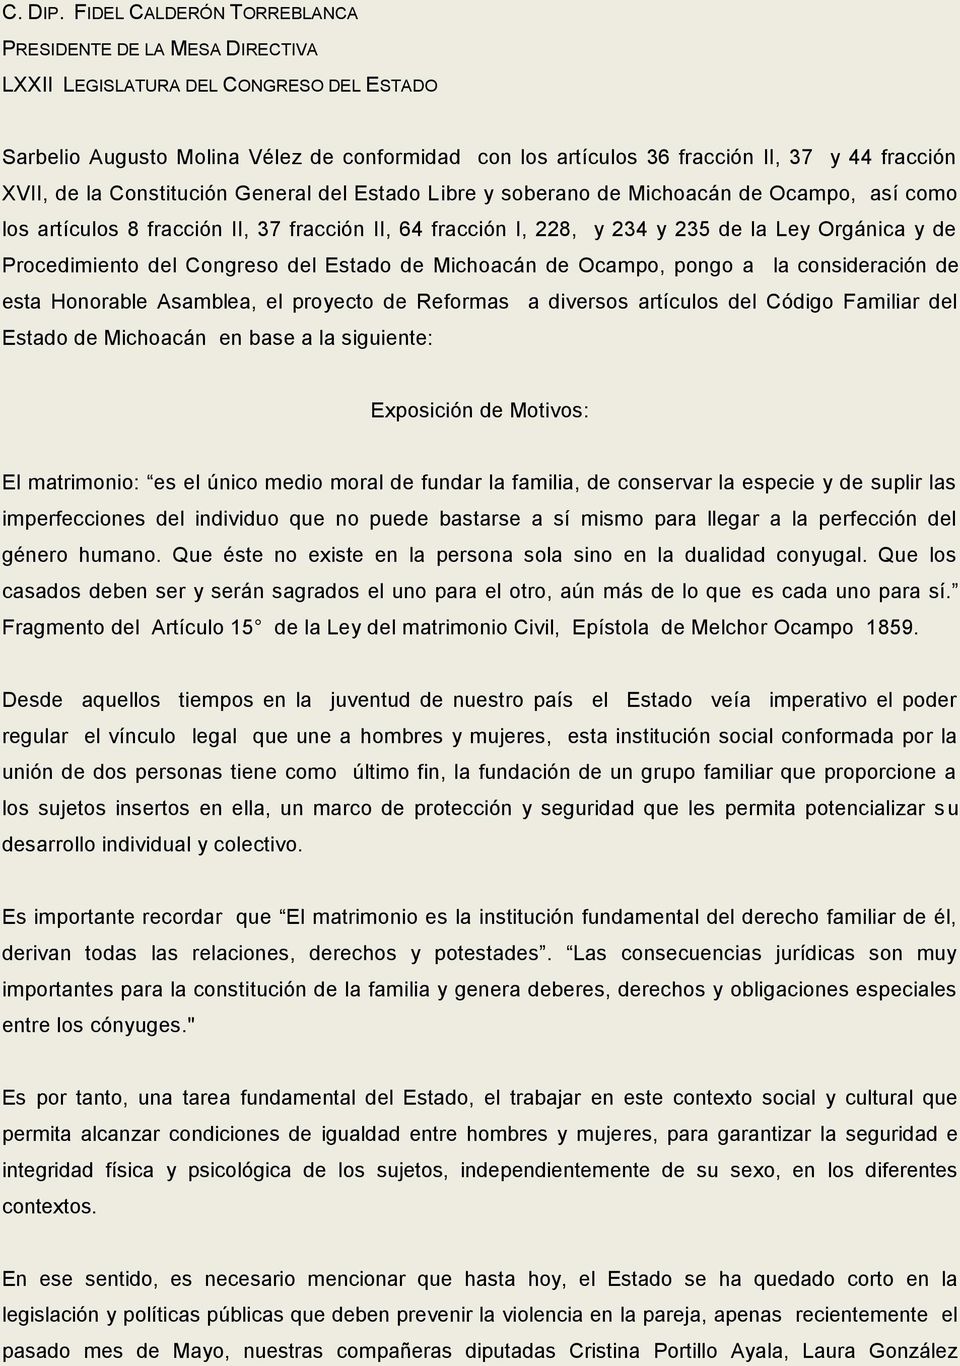 XVII, de la Constitución General del Estado Libre y soberano de Michoacán de Ocampo, así como los artículos 8 fracción II, 37 fracción II, 64 fracción I, 228, y 234 y 235 de la Ley Orgánica y de